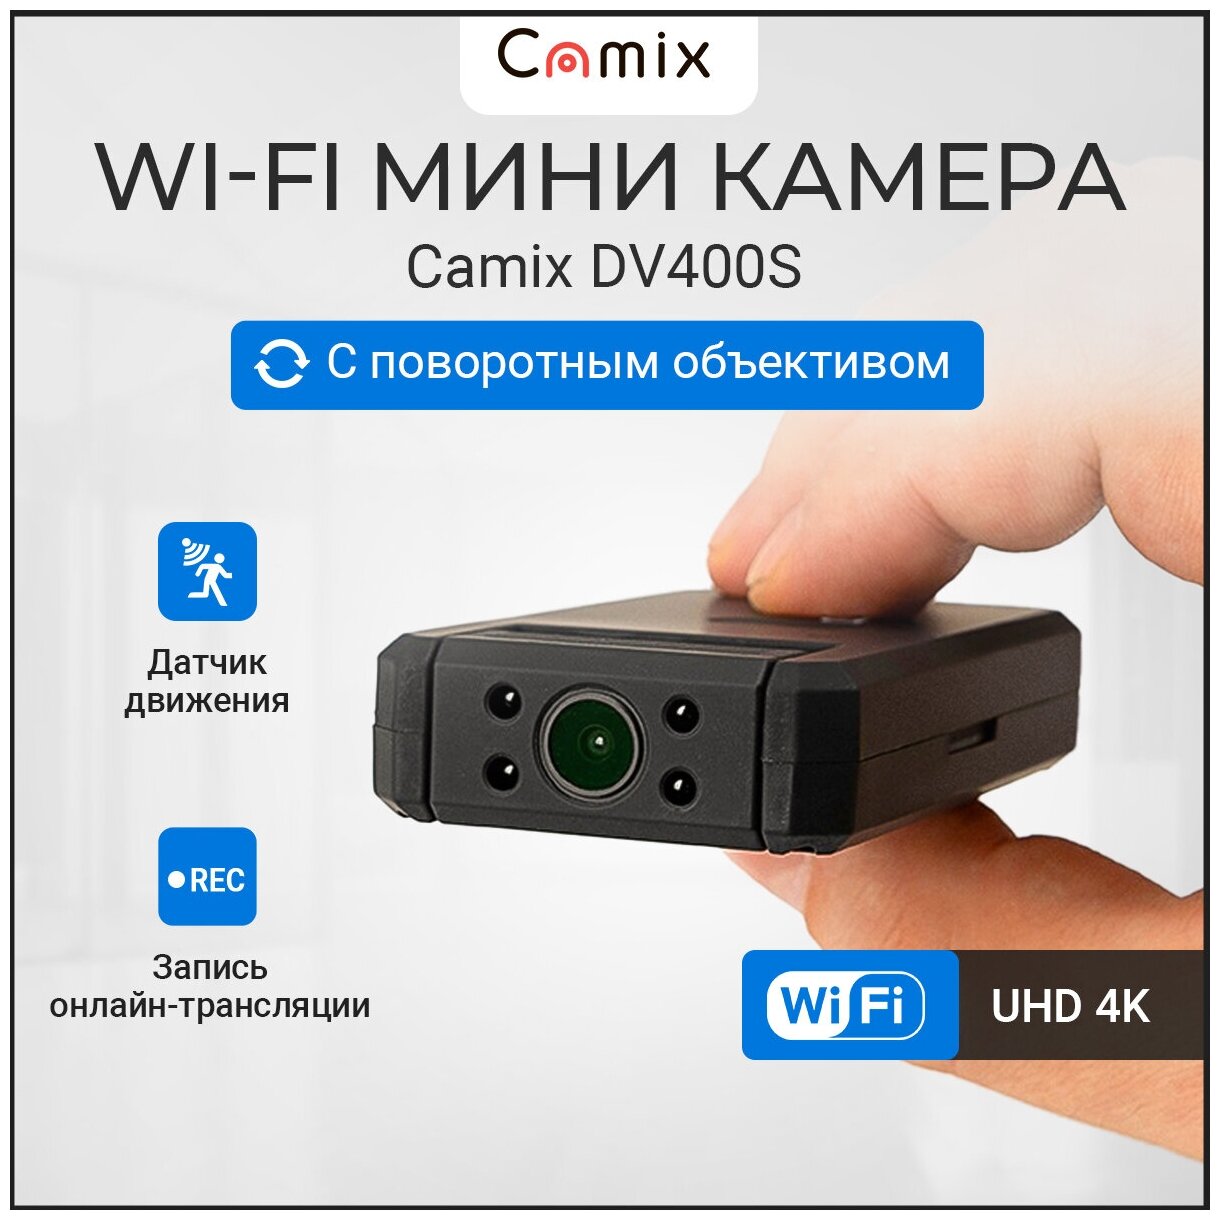 Видеокамера для видеонаблюдения с WiFi IP Camix DV400S, скрытая мини камера с поворотным объективом и разрешением трансляции 4К